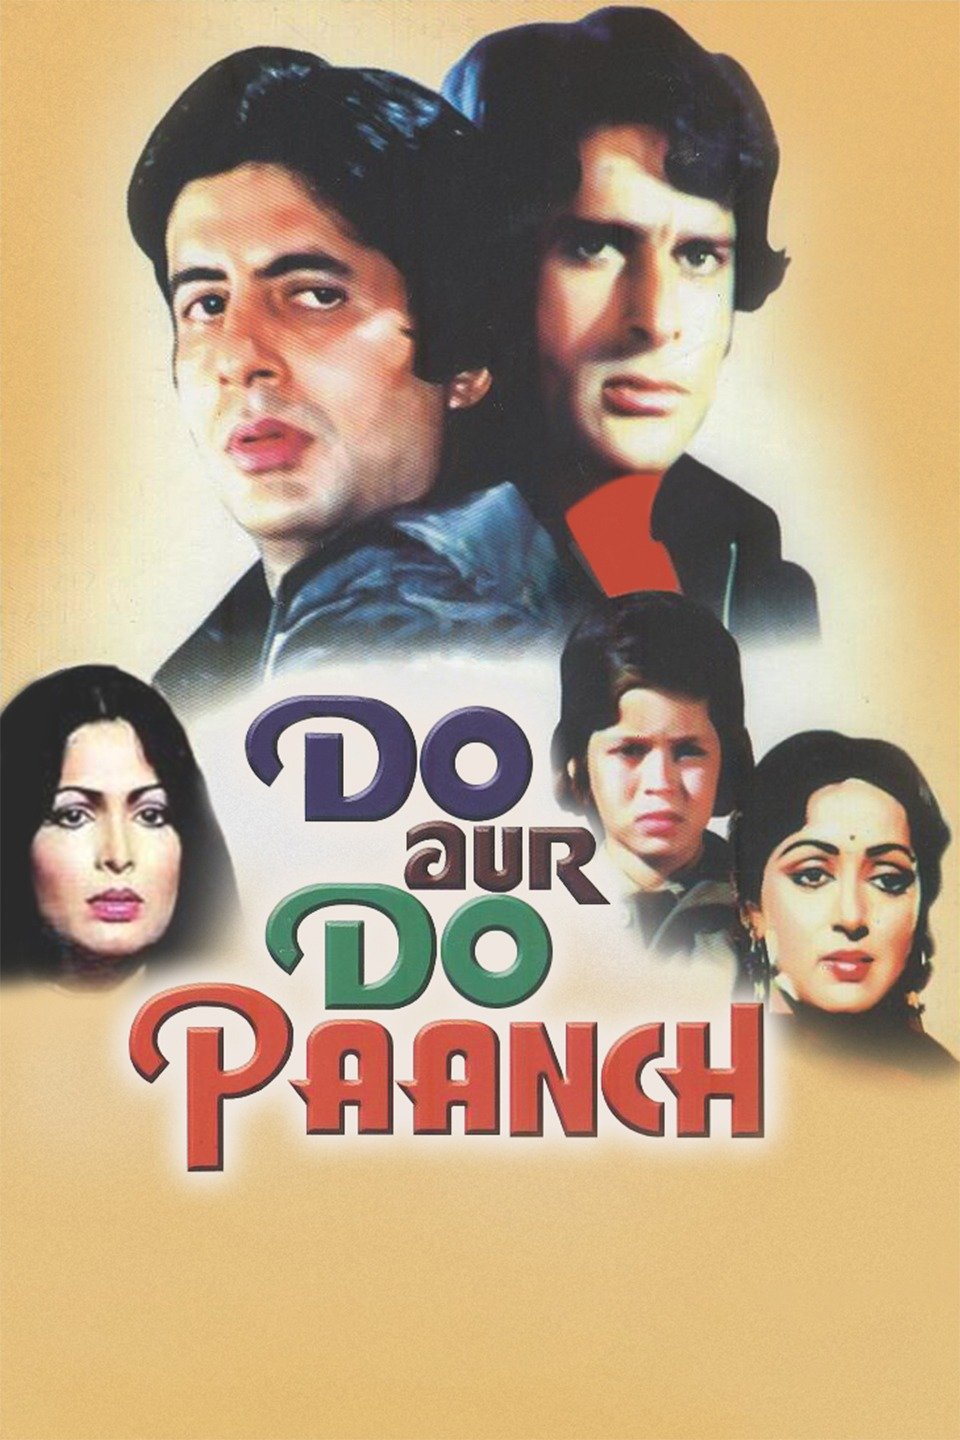 do-aur-do-paanch-1980-4161-poster.jpg